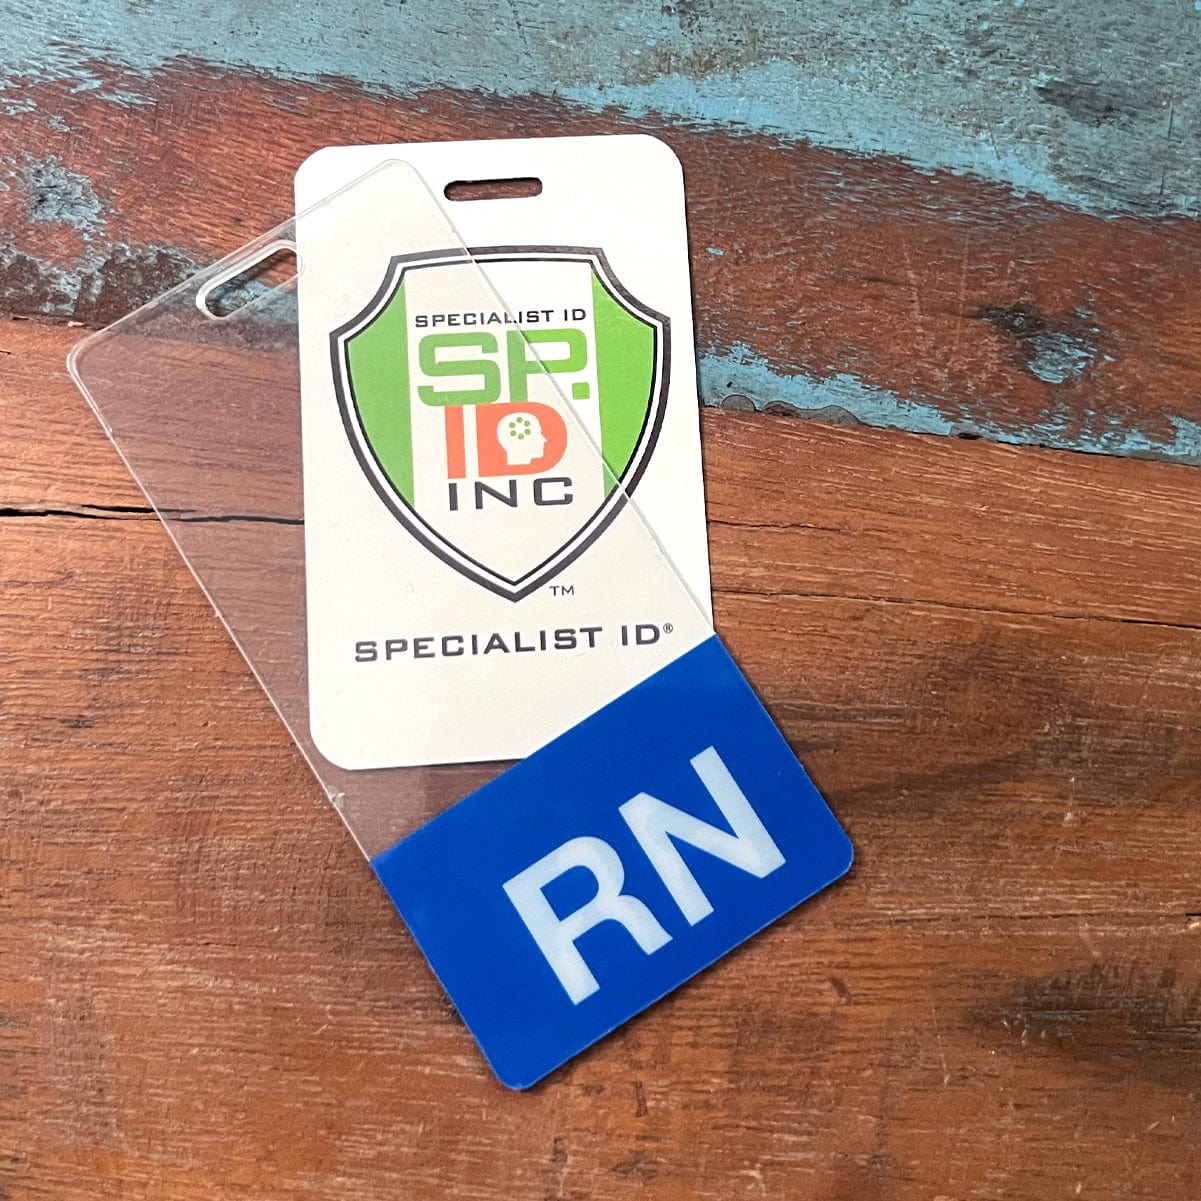 Licensed Practical Nurse LPN ID Photo Badge